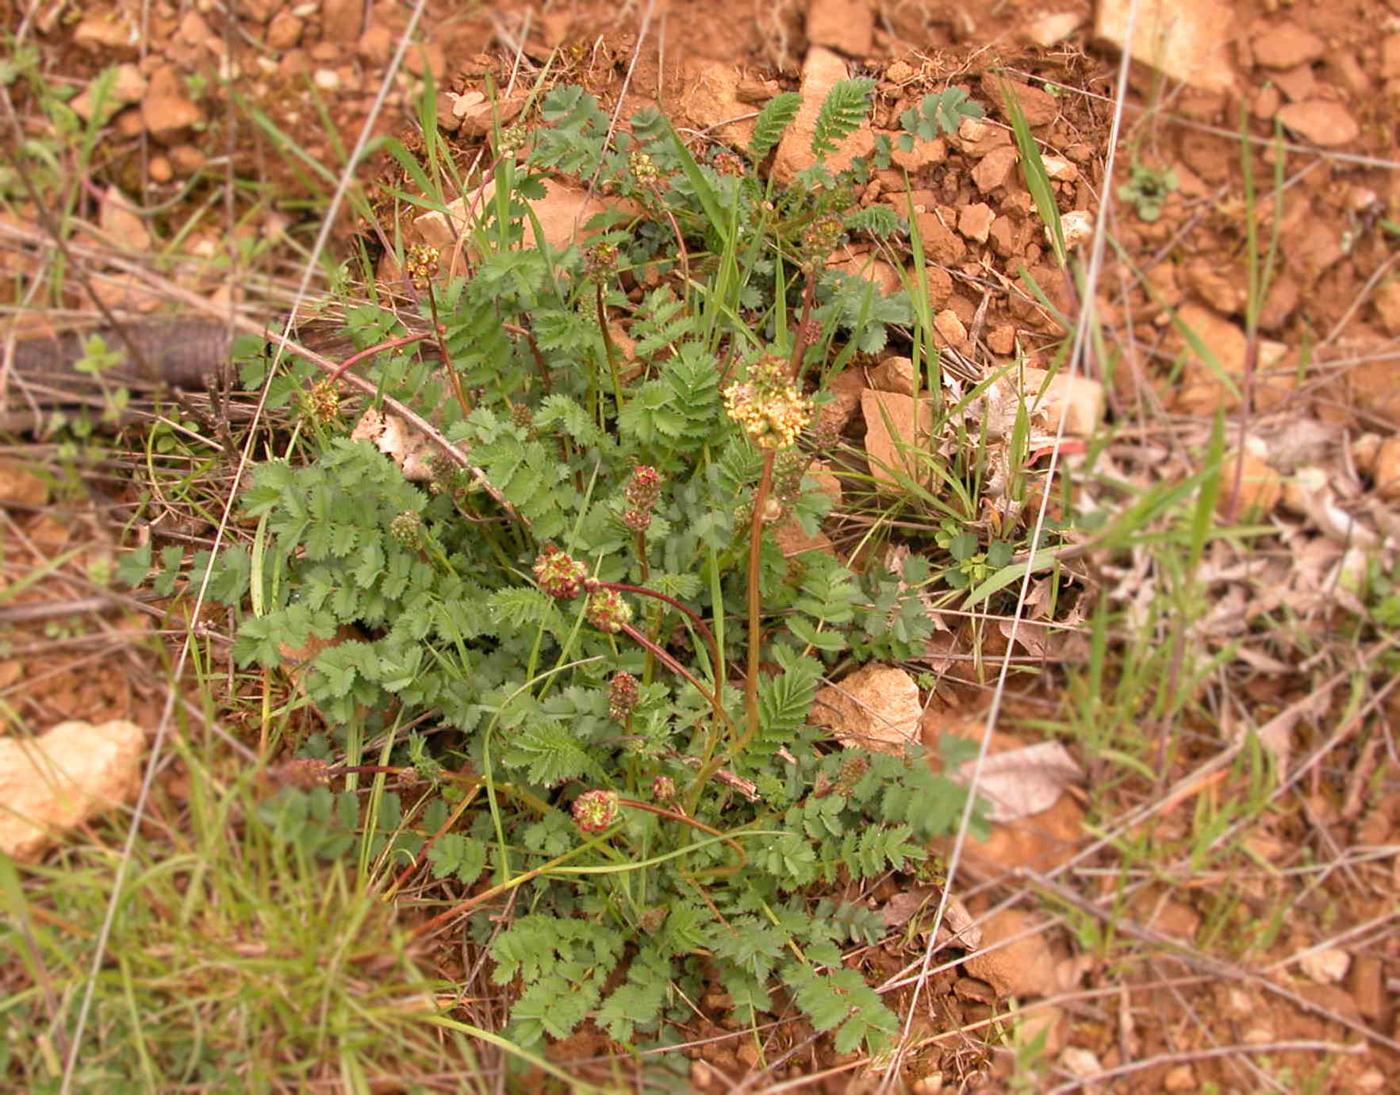 Burnet, Salad/Fodder plant